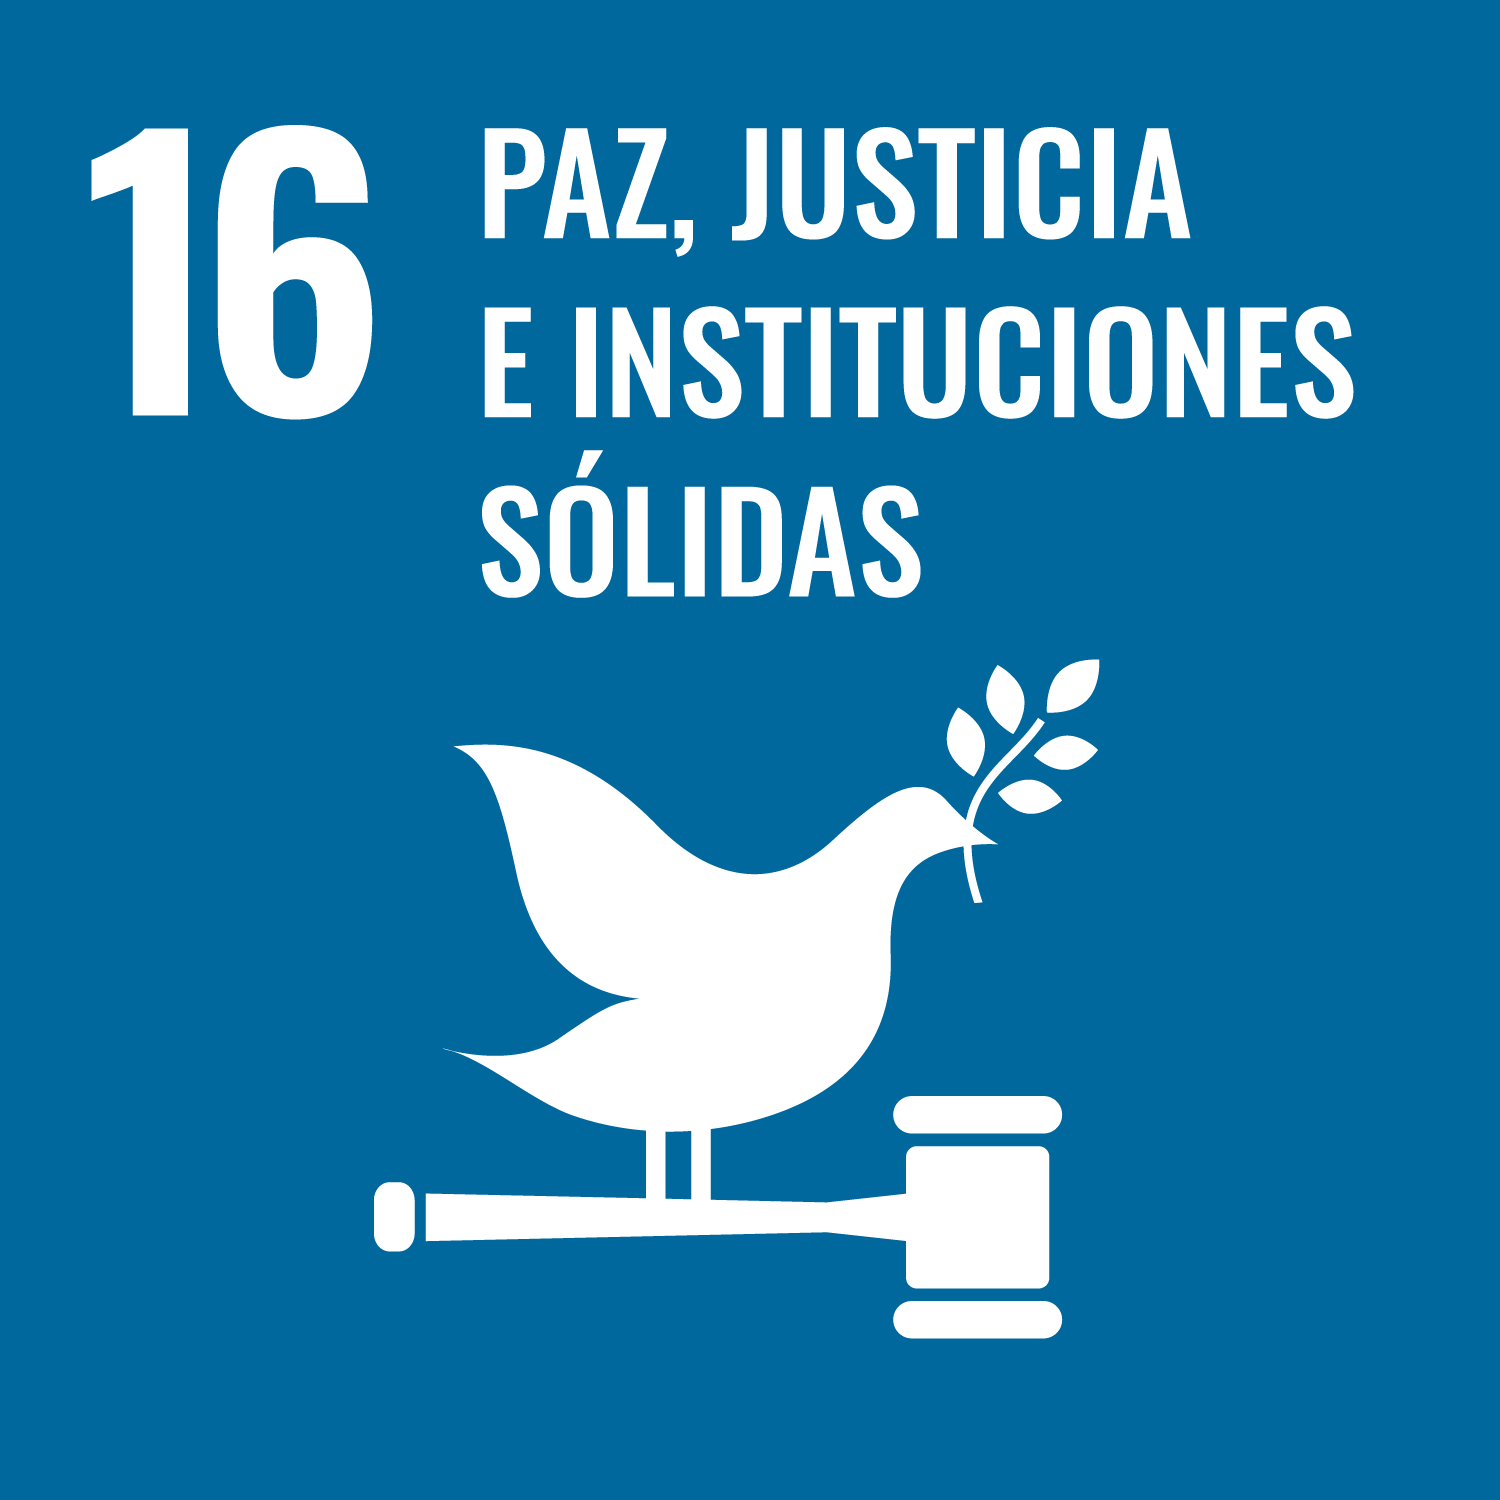 ODS paz, justicia e instituciones sólidas